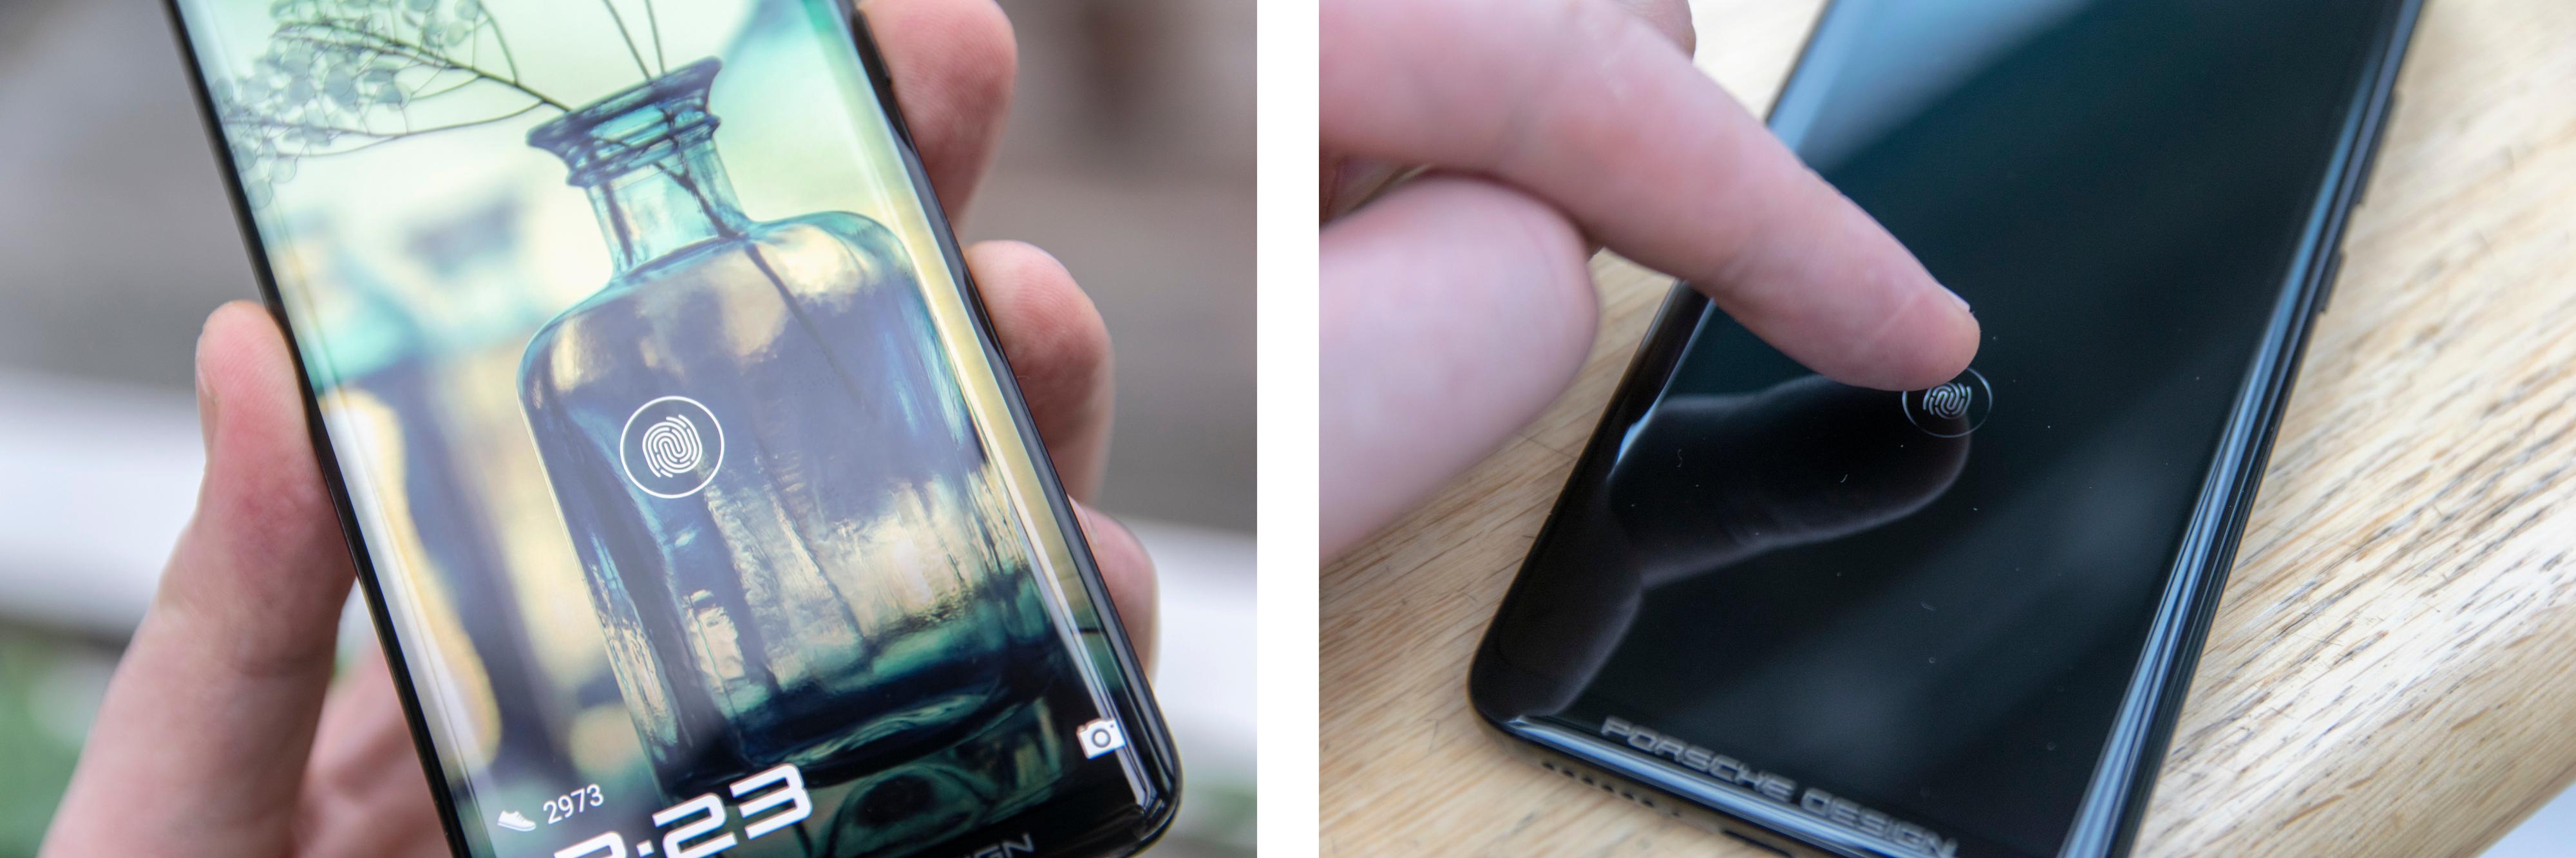 Teknologier som OLED og fingerlesere bygget inn i skjermen kan påvirke reparasjonsprisen når mobilen knuser.